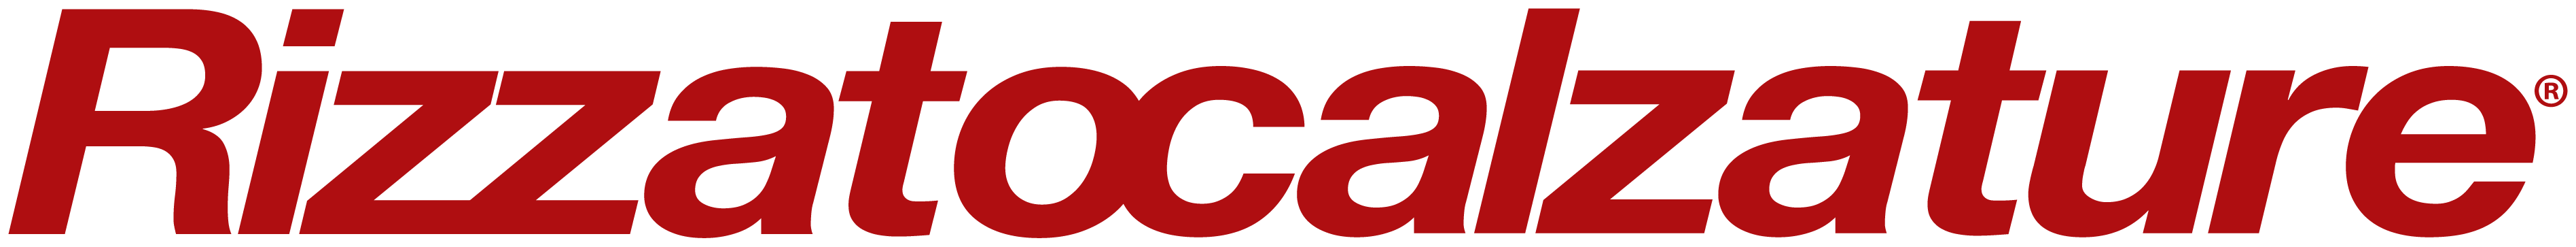 Rizzato logo rosso